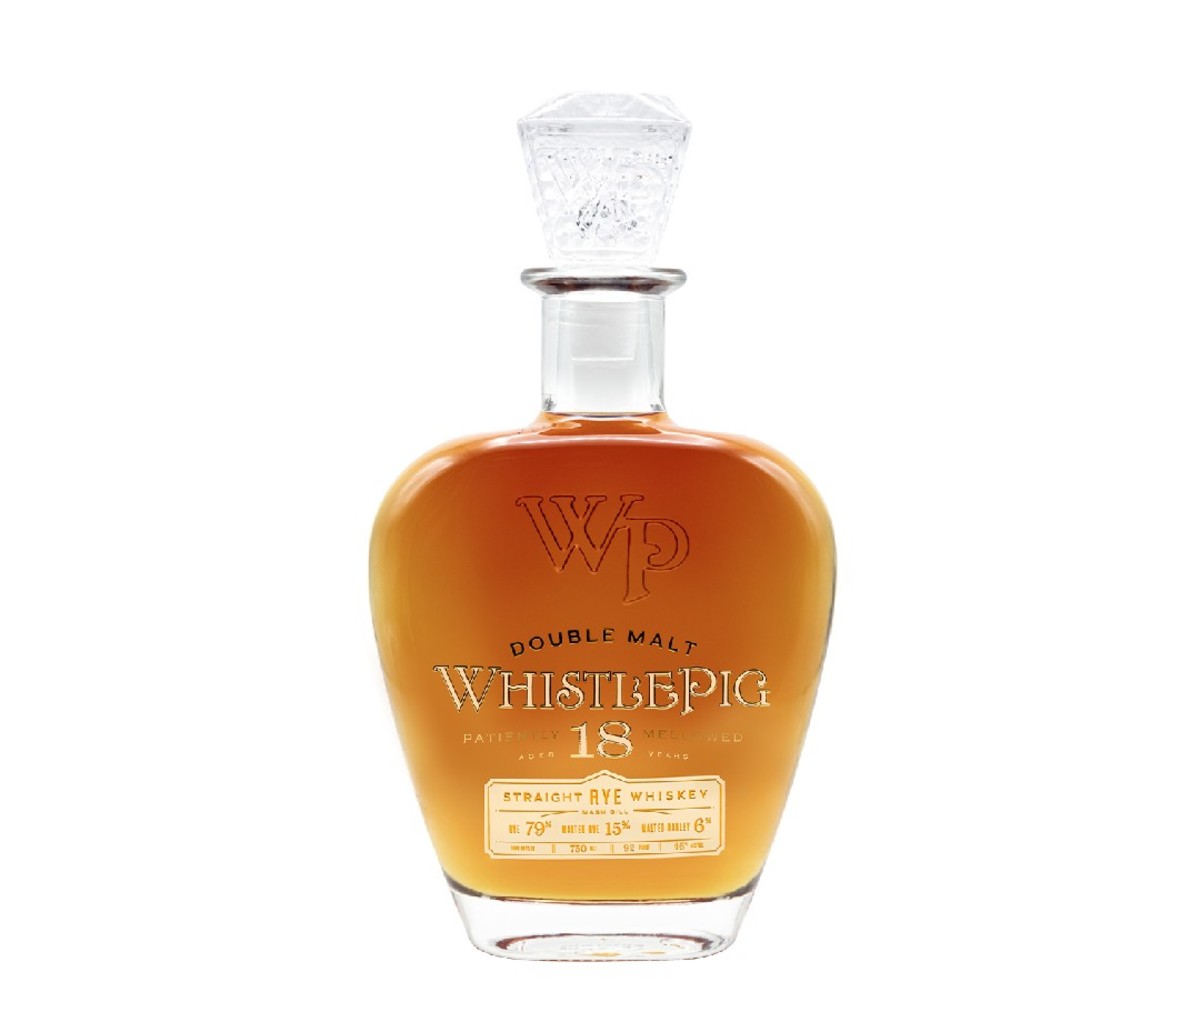 Bottle of Whistlepig 18 whiskey